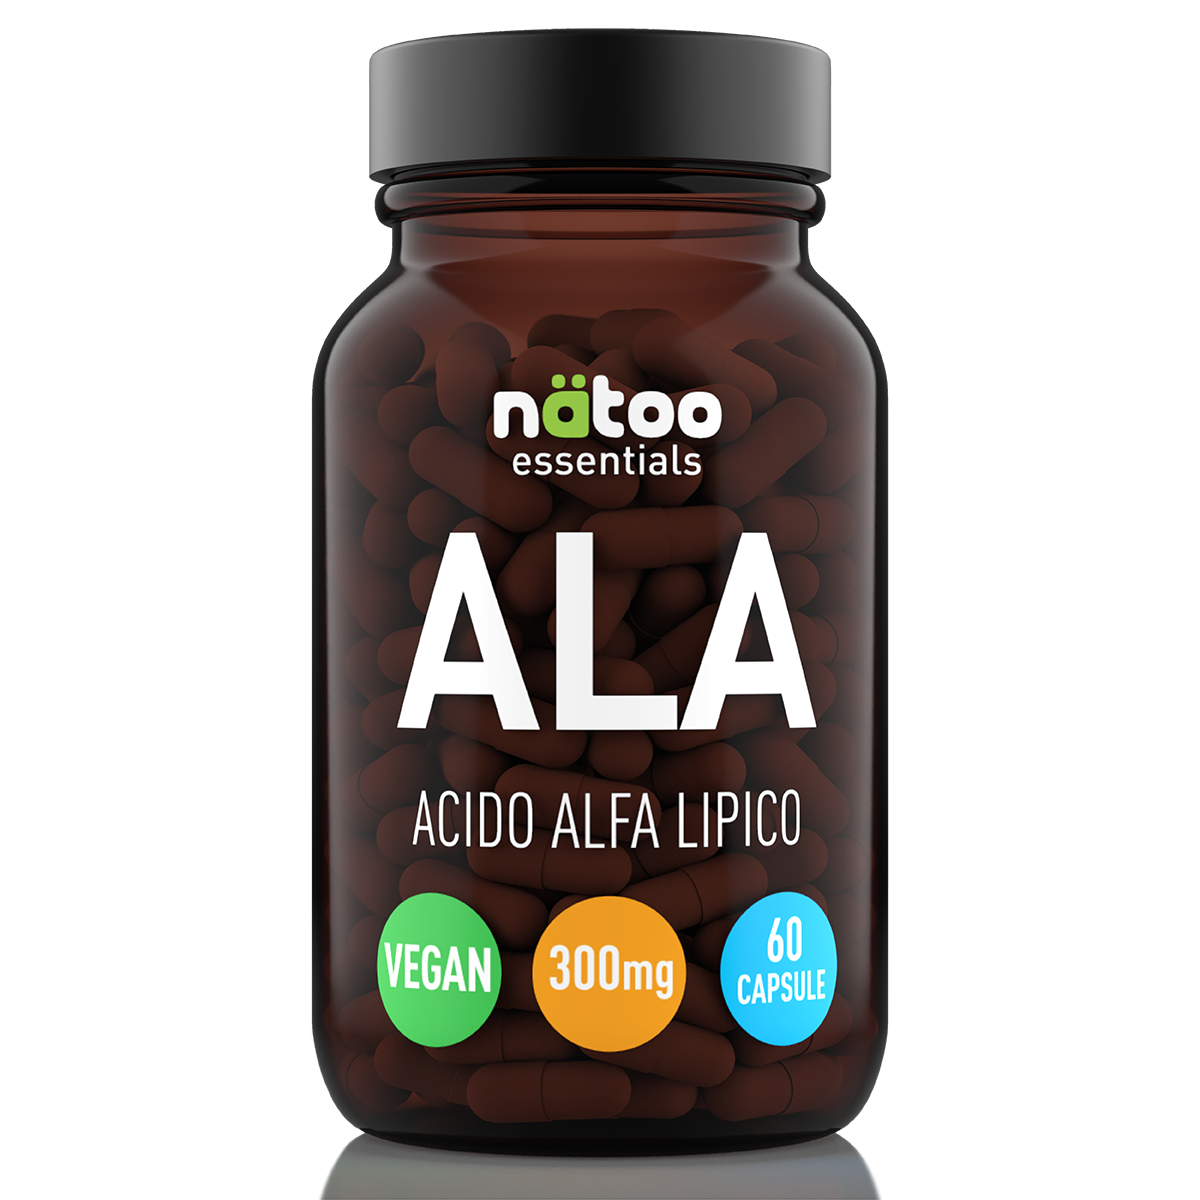 ALA (Alpha Lipoic Acid) 300mg - nätoo